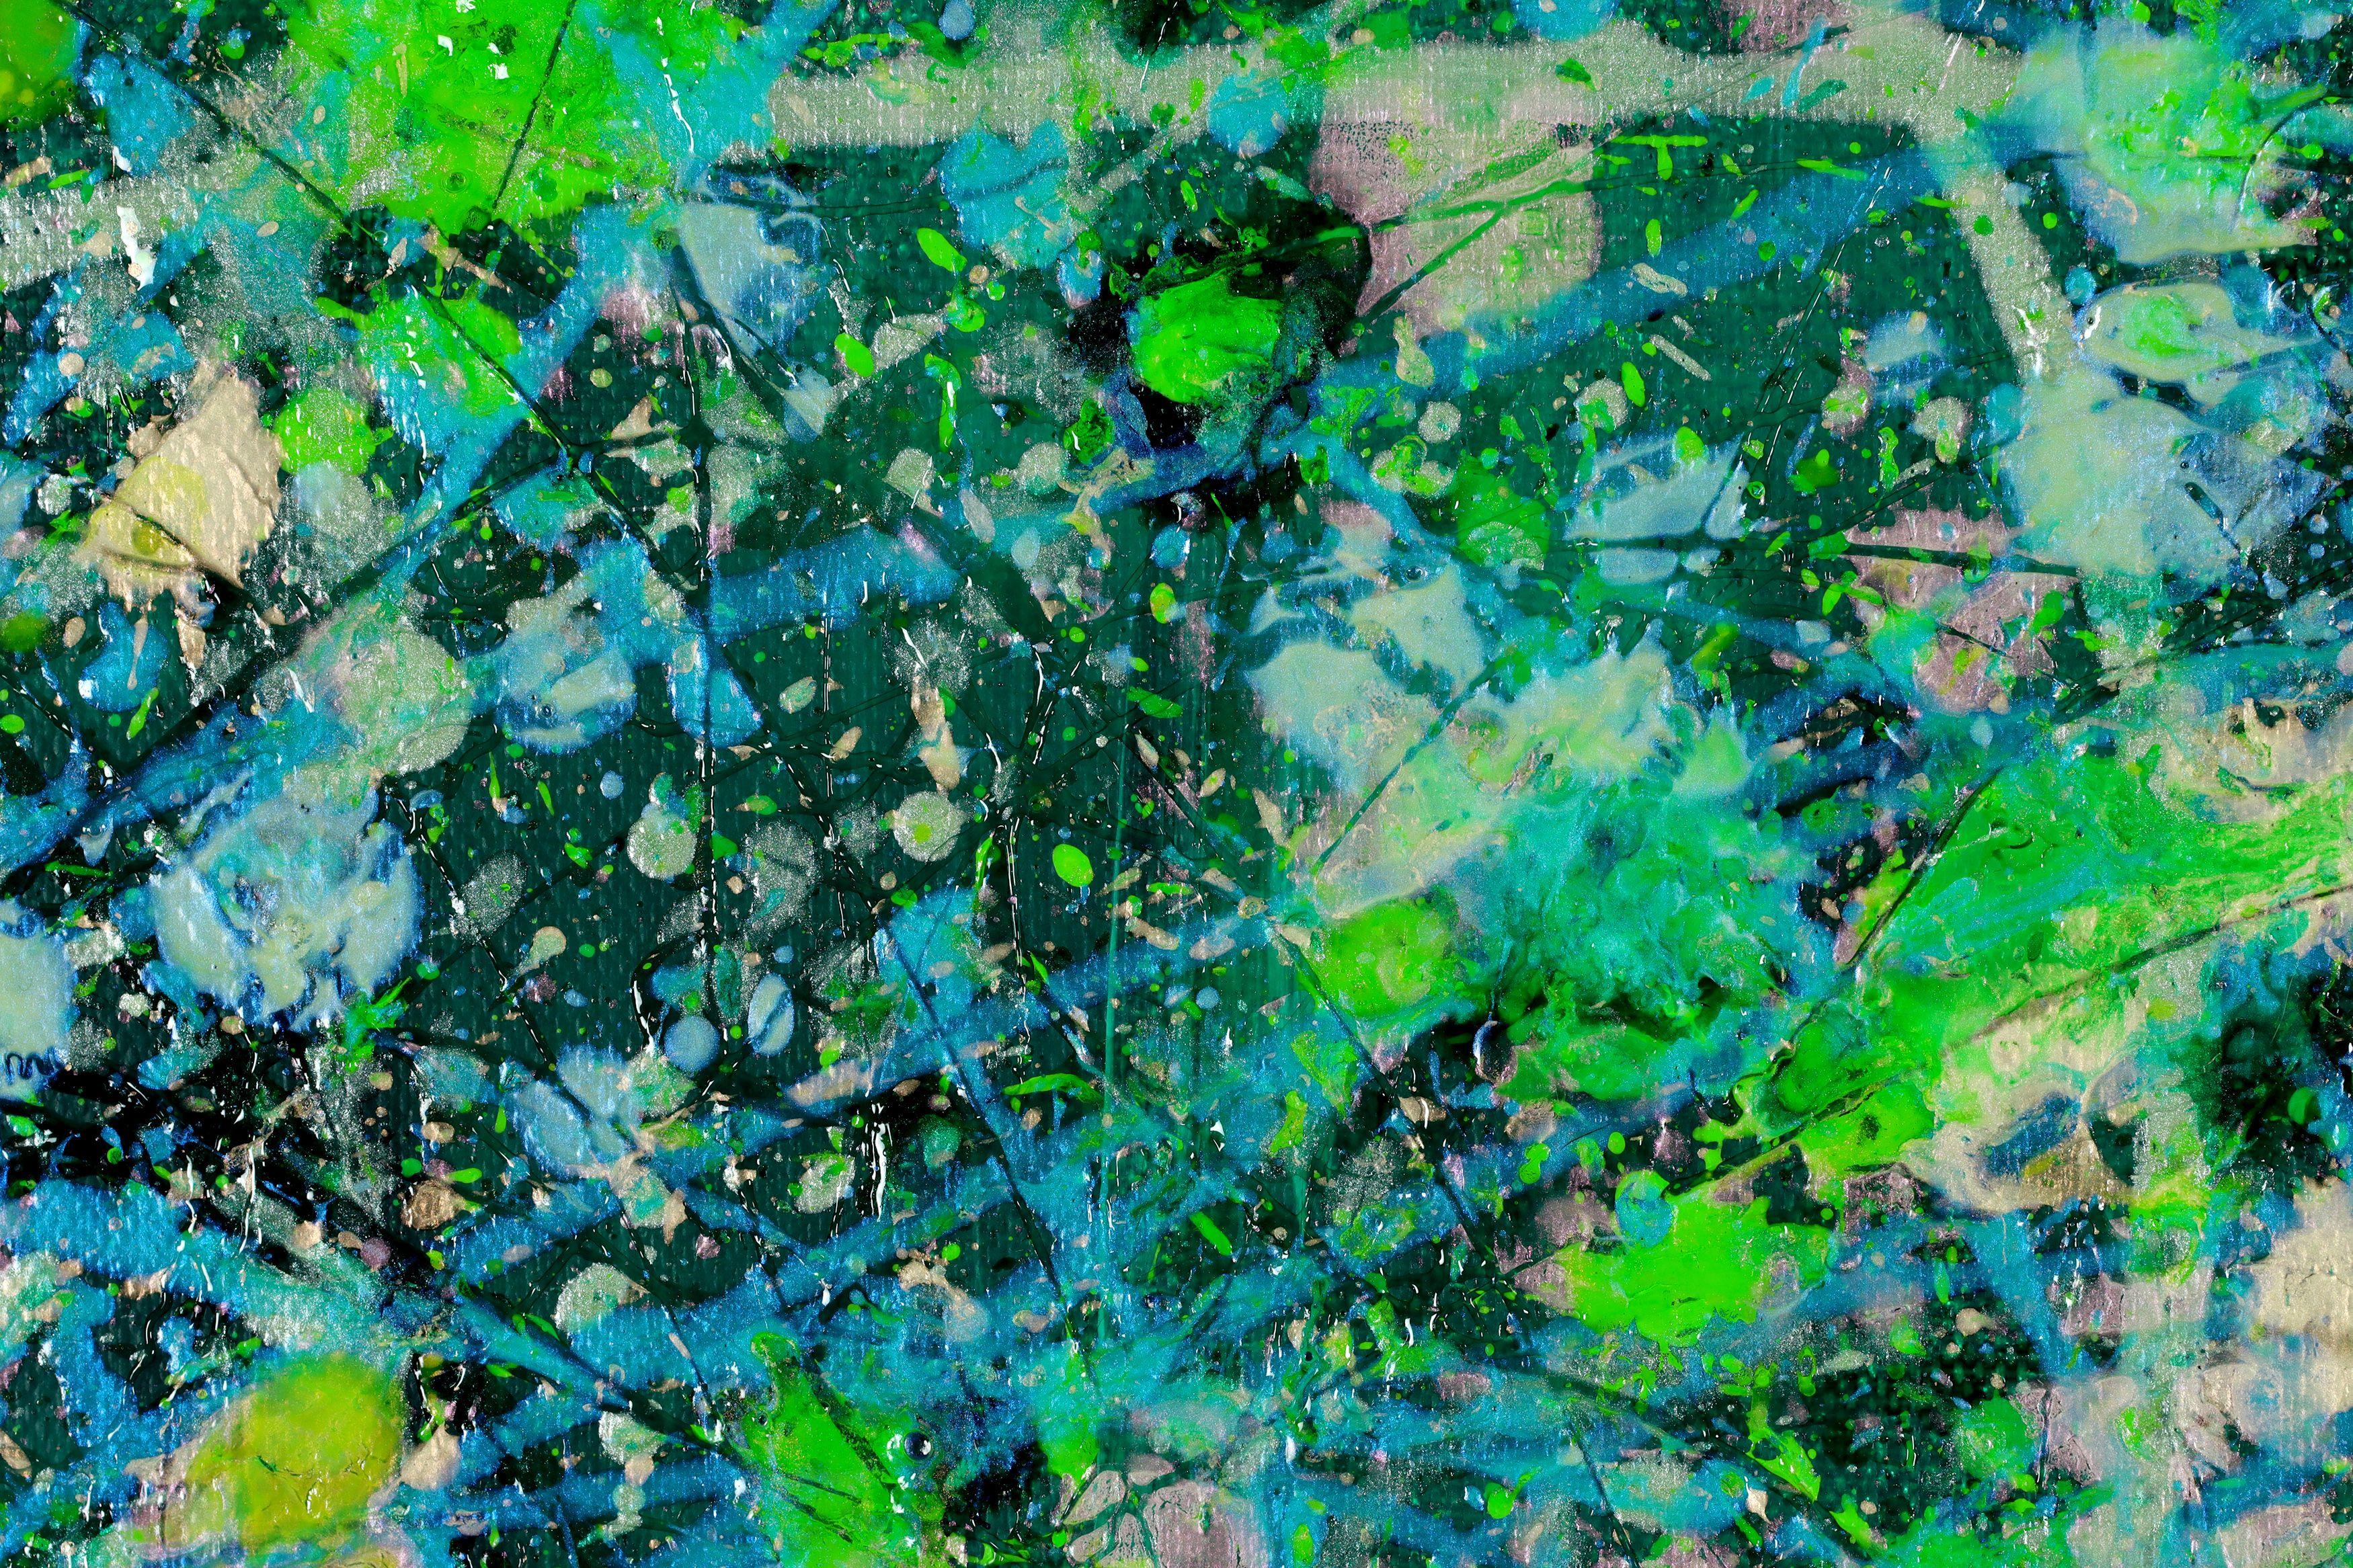 Expressionistisches abstraktes Gemälde mit synchronen Nieselregen in Grün-, Silber-, Gelb- und blass schillernden Orangetönen auf grünem Hintergrund. Vollendet mit gestischer Bewegung und Energie. Auf der Vorderseite signiert.    Ich lege ein